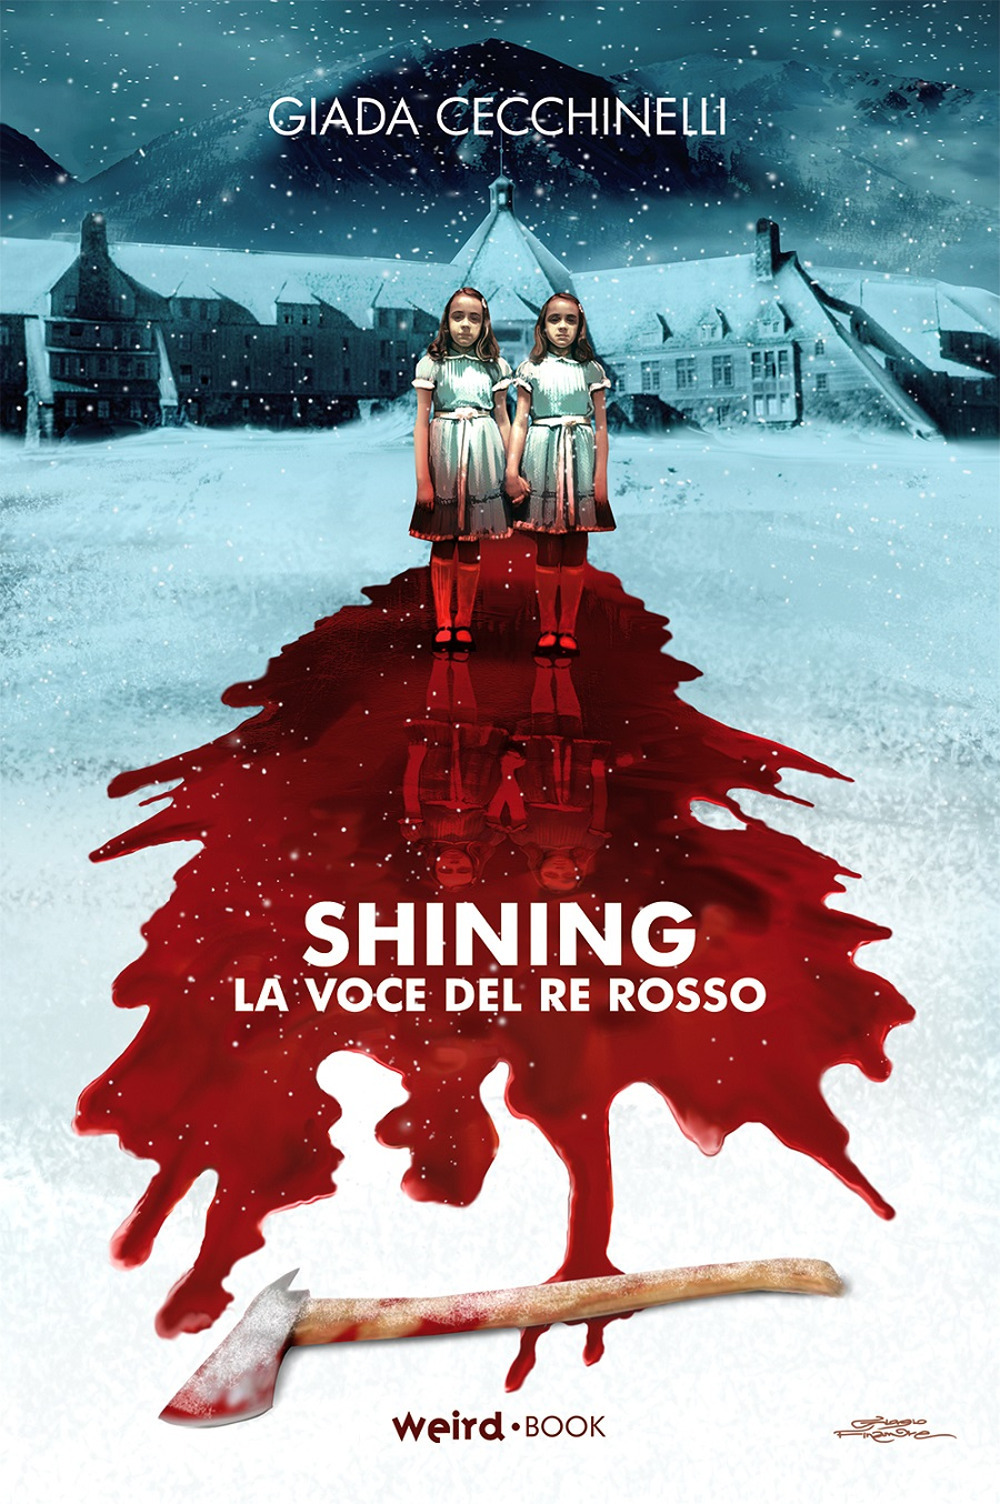 Libri Giada Cecchinelli - Shining. La Voce Del Re Rosso NUOVO SIGILLATO, EDIZIONE DEL 08/04/2020 SUBITO DISPONIBILE